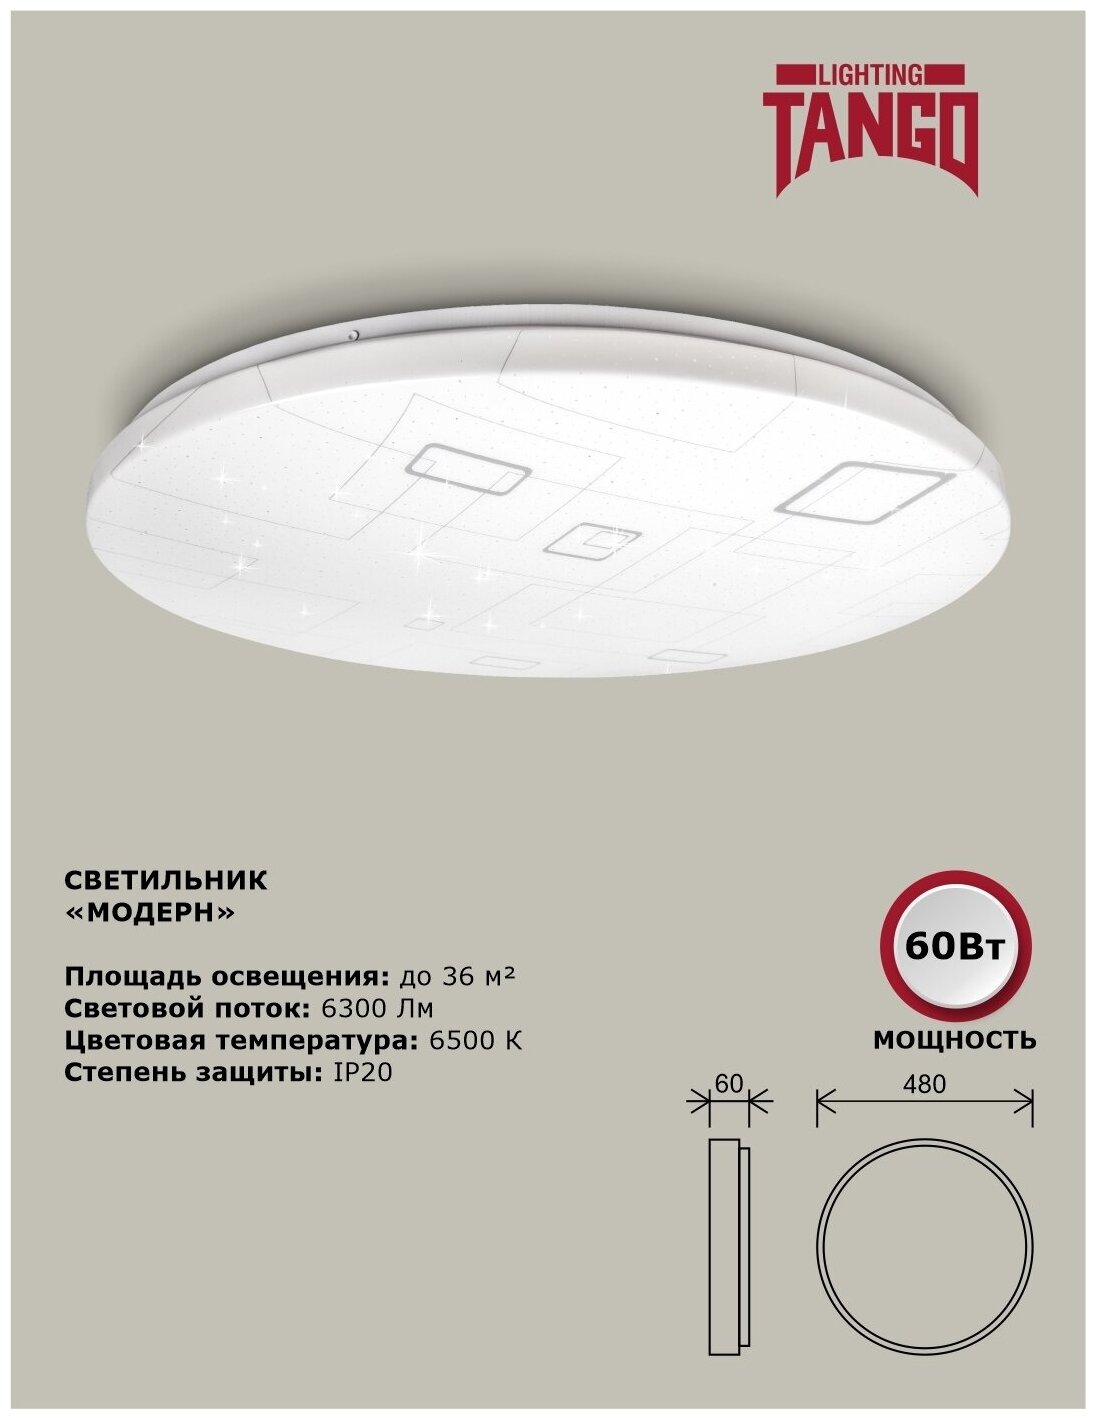 Cветильник светодиодный настенно-потолочный "модерн" 60Вт (480*60,основание 450мм) 6500К TANGO россия LED - фотография № 4